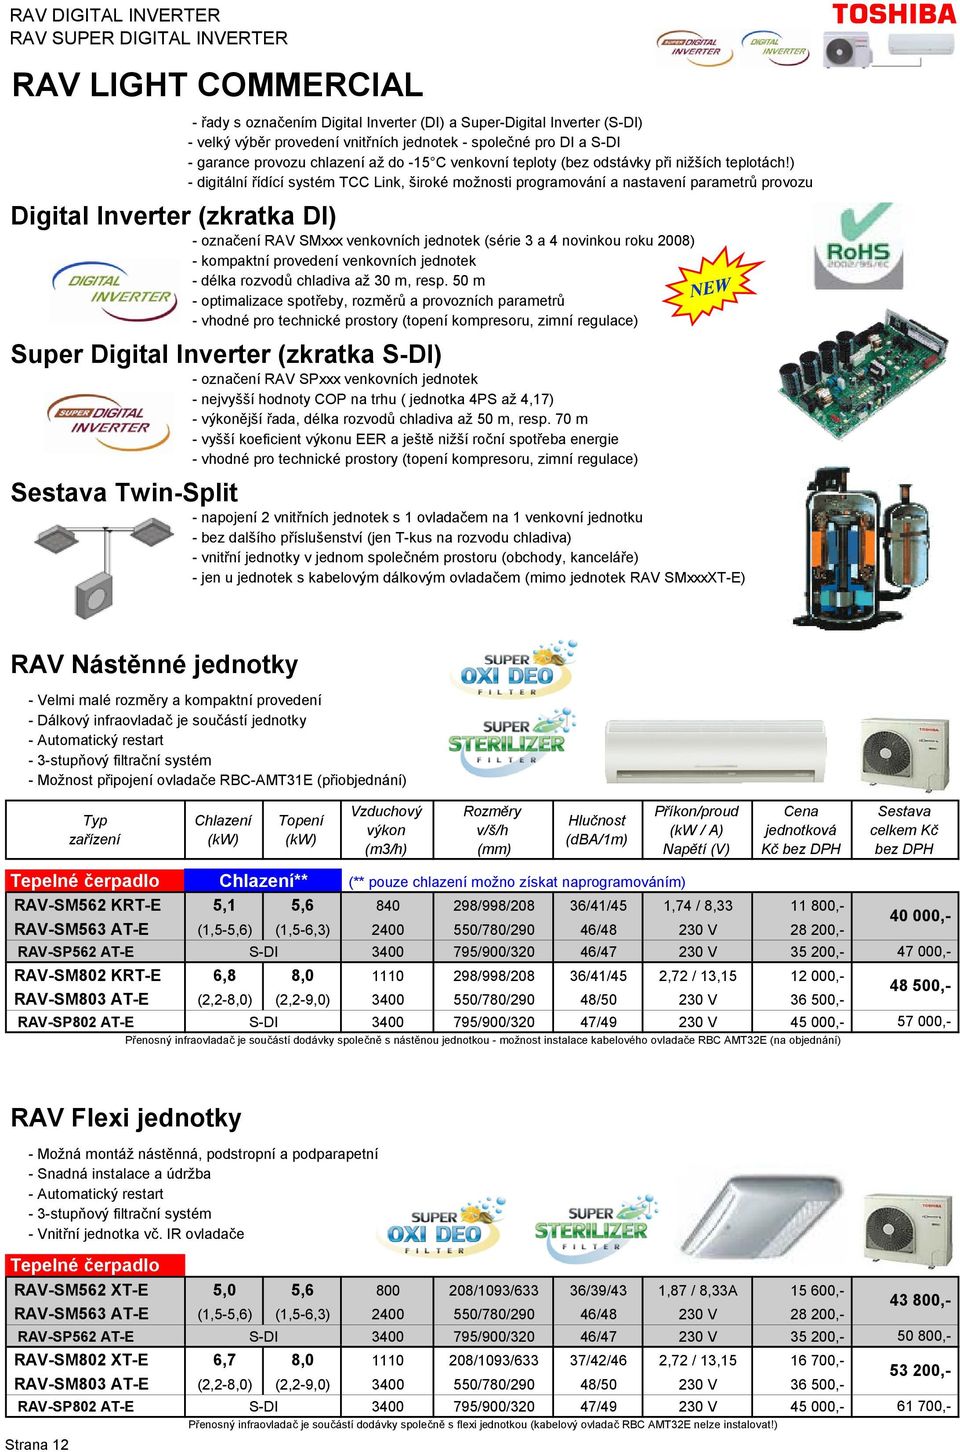 ) - digitální řídící systém TCC Link, široké možnosti programování a nastavení parametrů provozu Digital Inverter (zkratka DI) - označení RAV SMxxx venkovních jednotek (série 3 a 4 novinkou roku